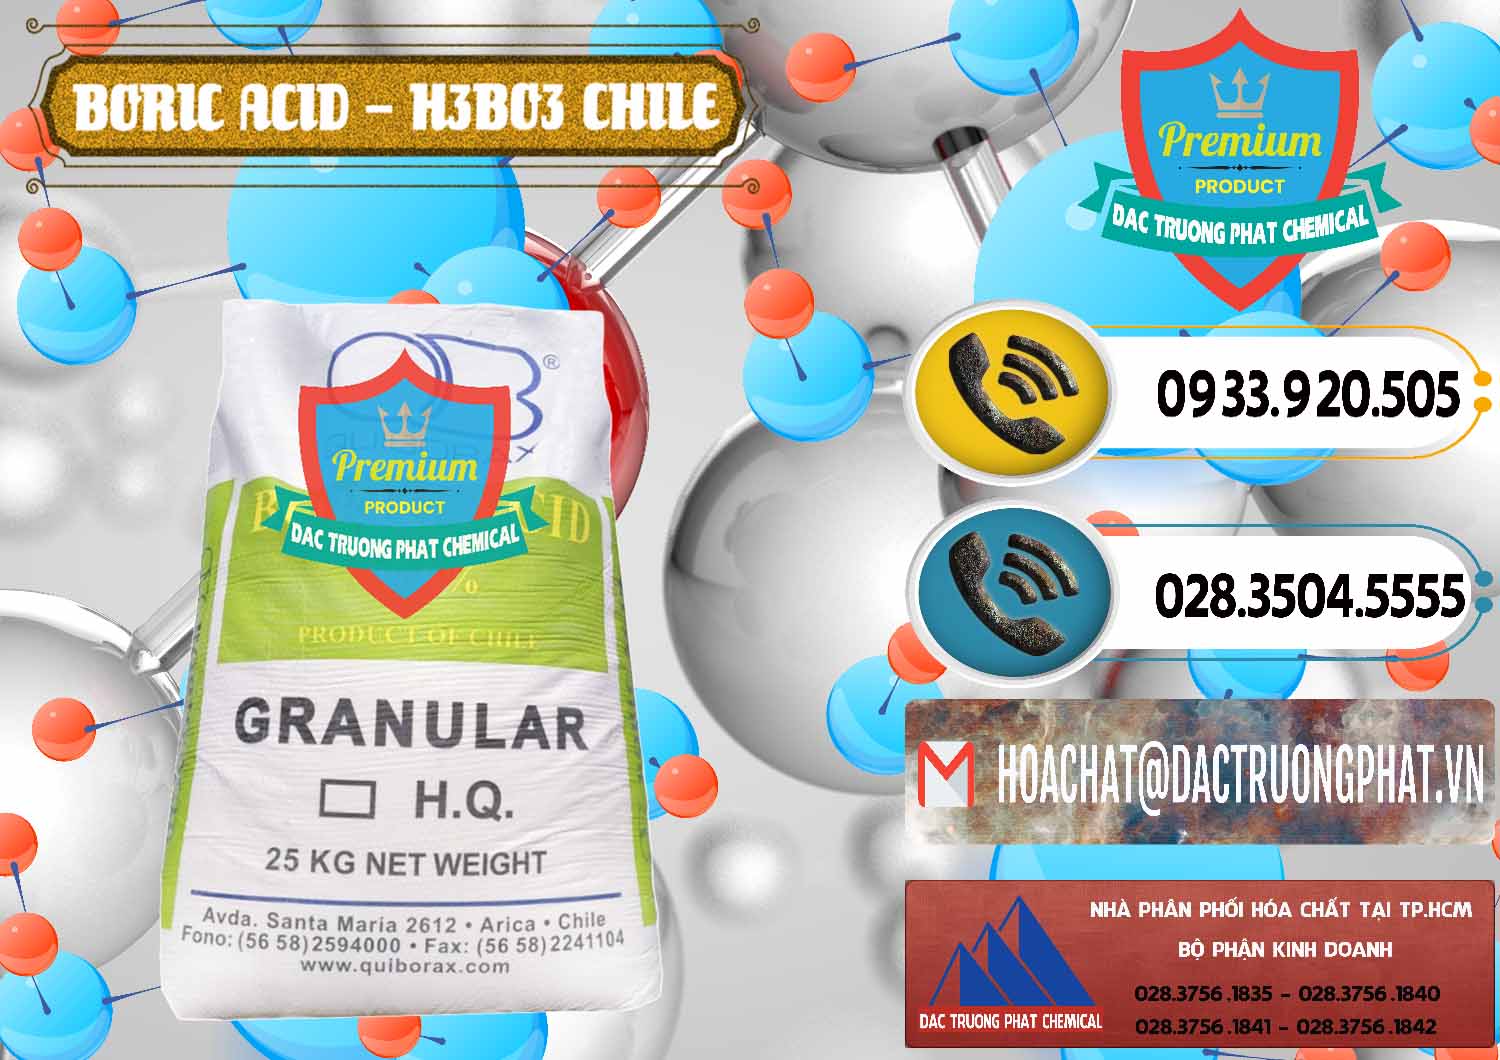 Nơi chuyên cung ứng - bán Acid Boric – Axit Boric H3BO3 99% Quiborax Chile - 0281 - Nơi chuyên bán - cung cấp hóa chất tại TP.HCM - hoachatdetnhuom.vn